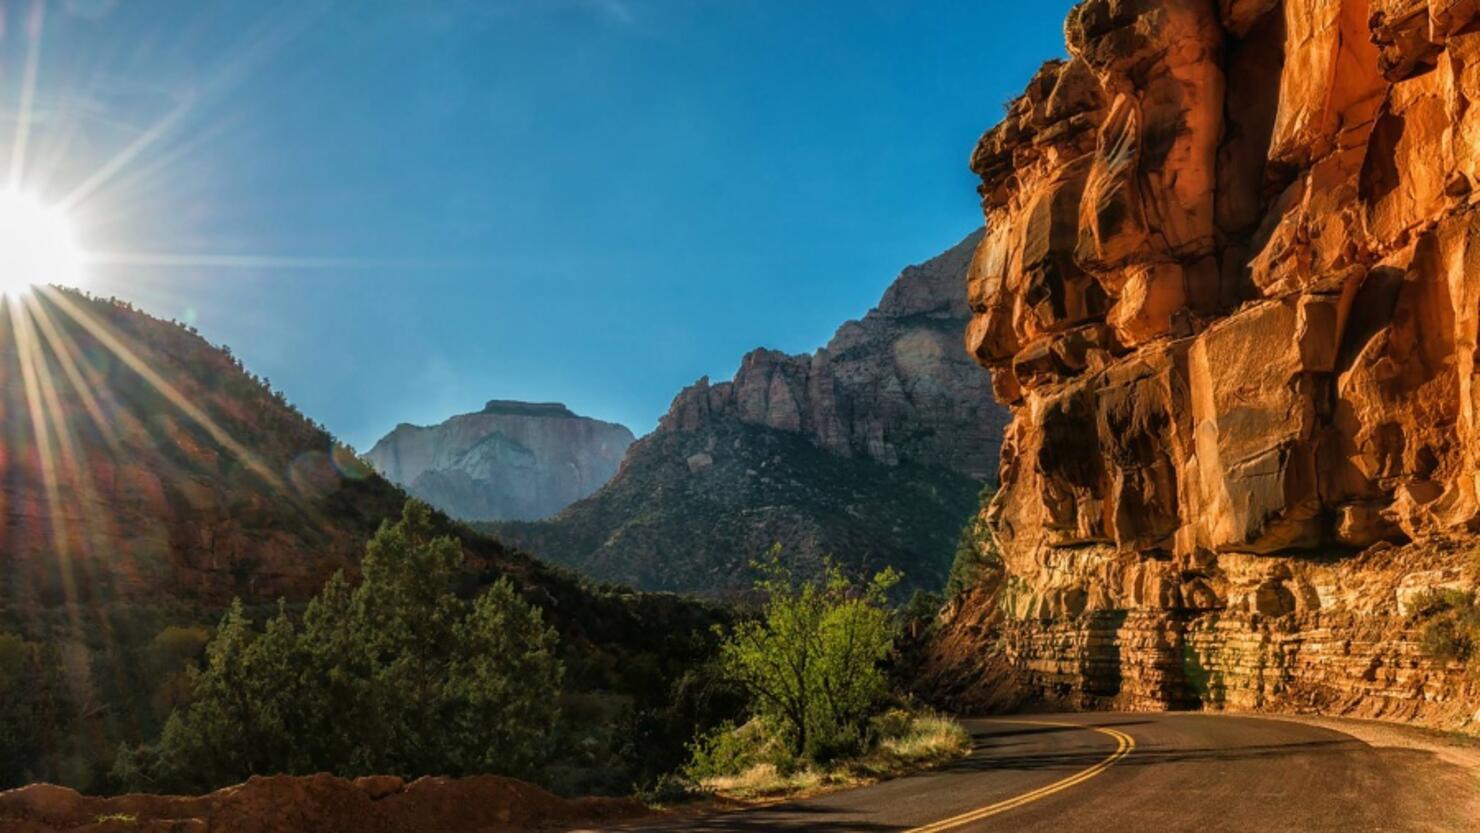 Road through mountains in Utah